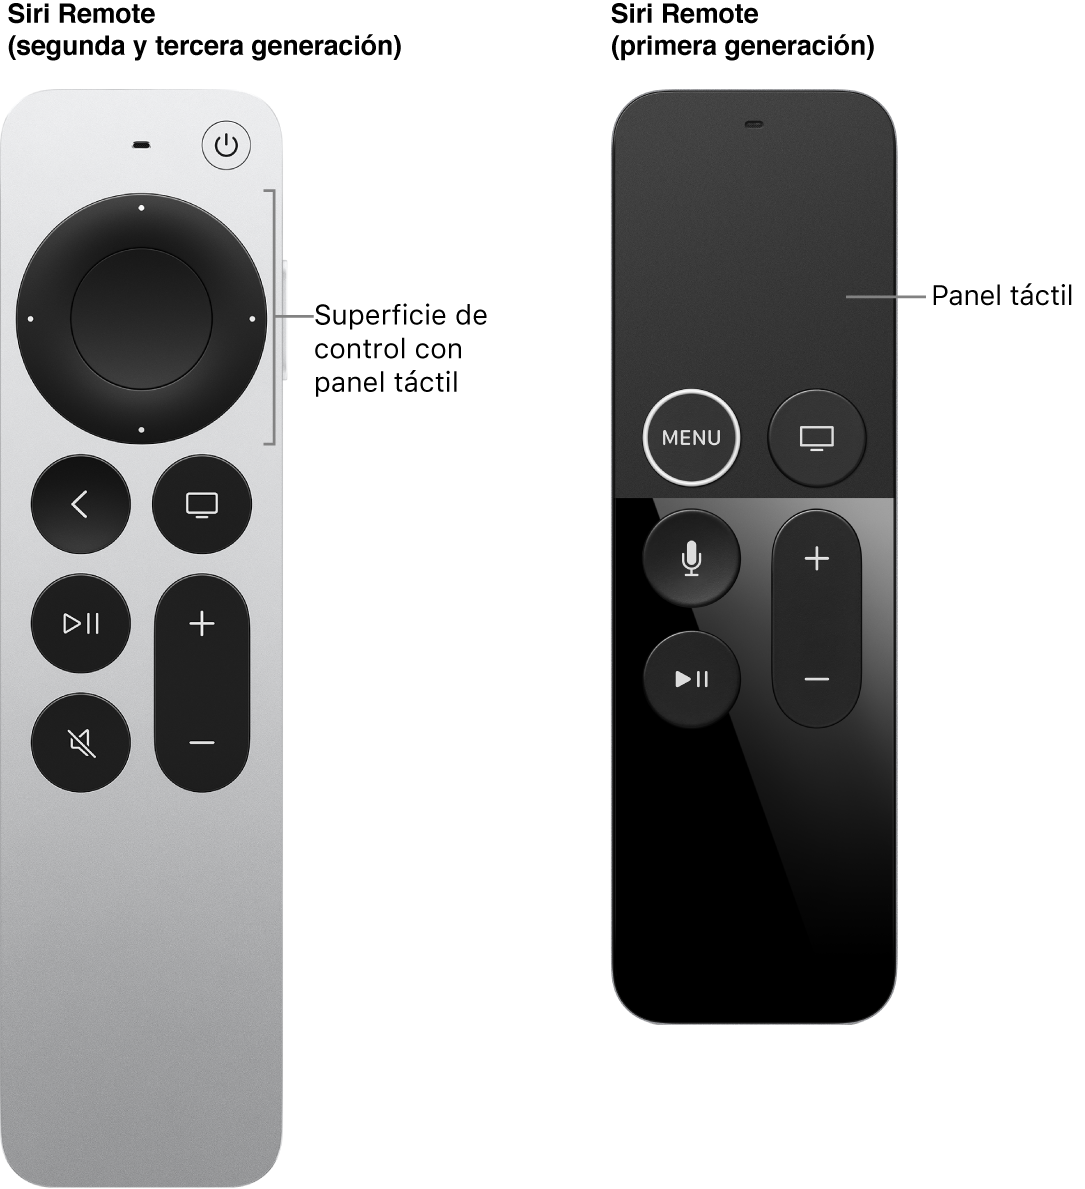 El Siri Remote (segunda y tercera generación) con superficie de control, y el Siri Remote (primera generación) con superficie táctil